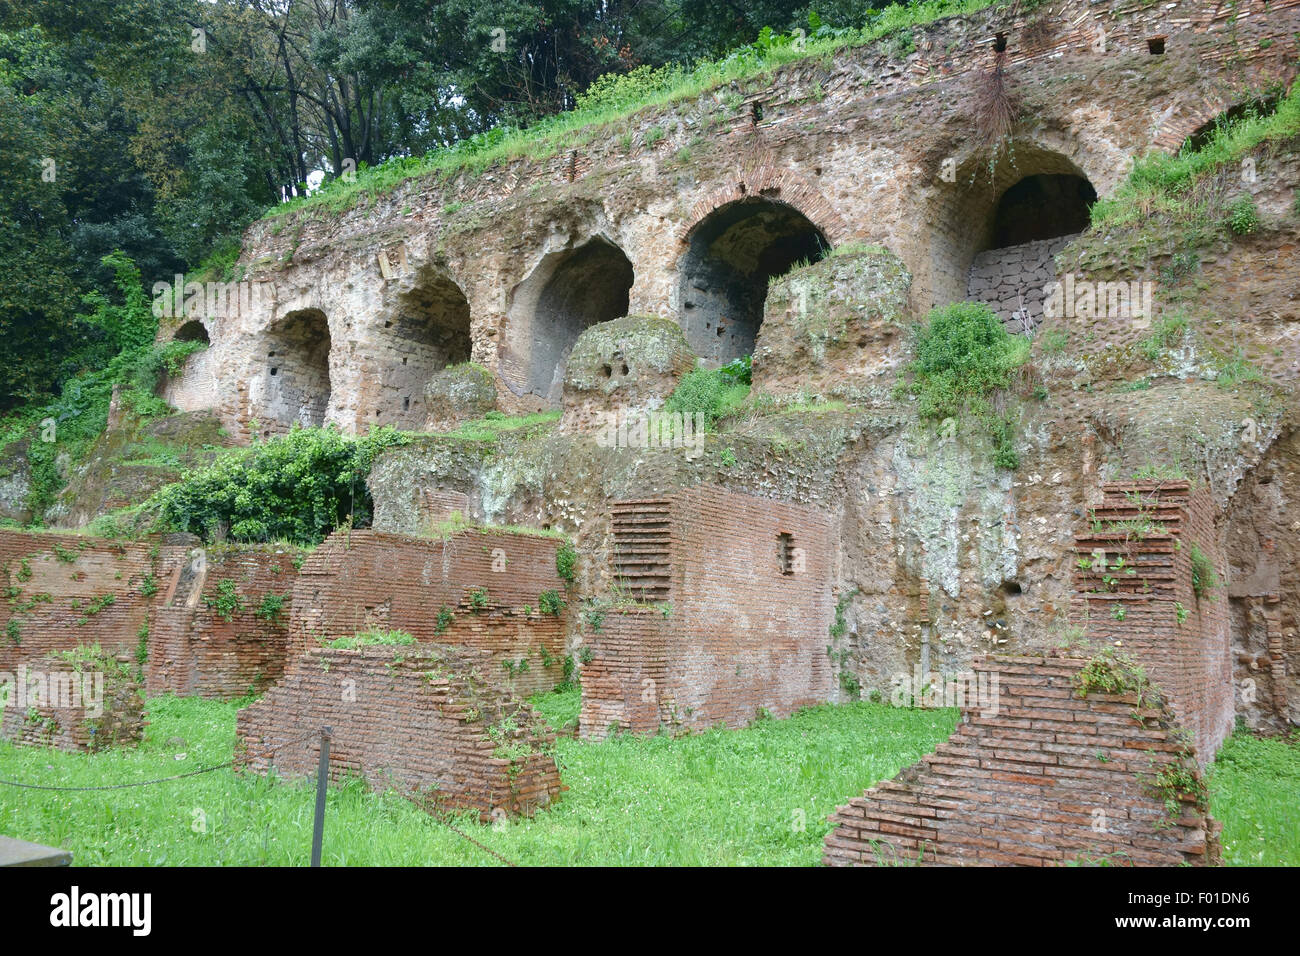 Roma, Italia - 5 Aprile 2015: sottostrutture e insula, II secolo d.c. edificio romano sulle pendici del colle Palatino Foto Stock